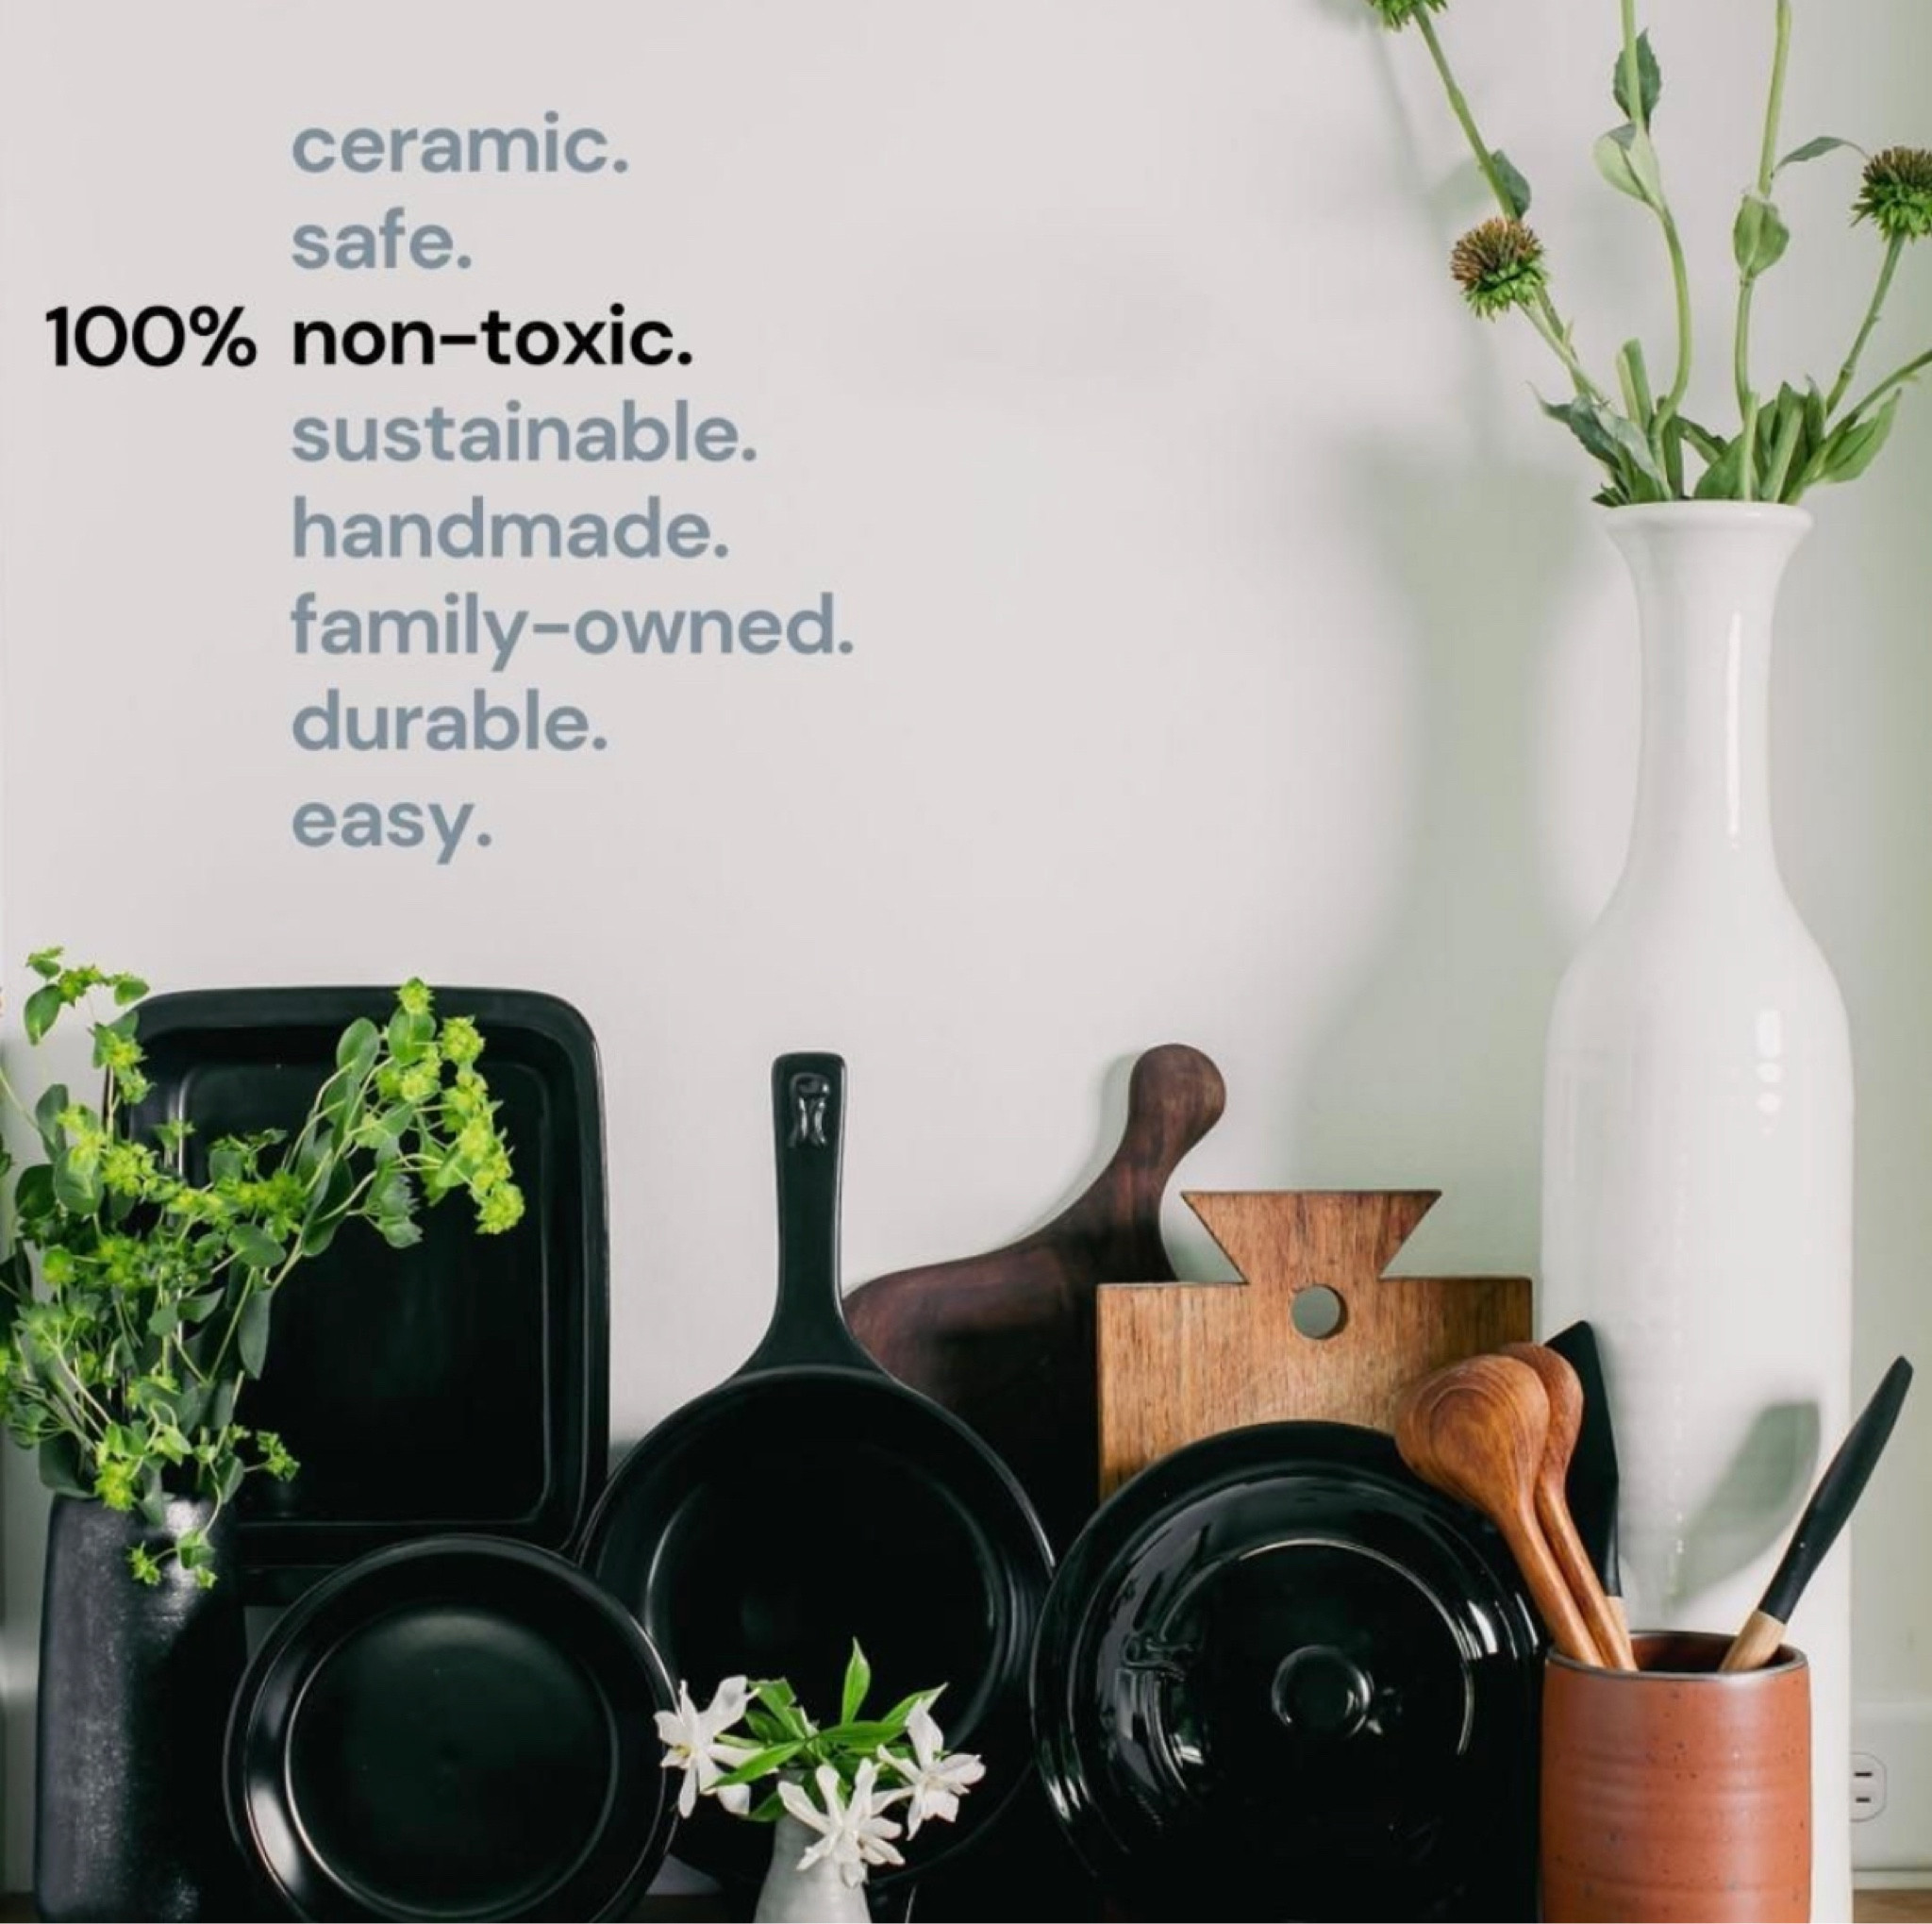 Xtrema Nontoxic Ceramic Cookware